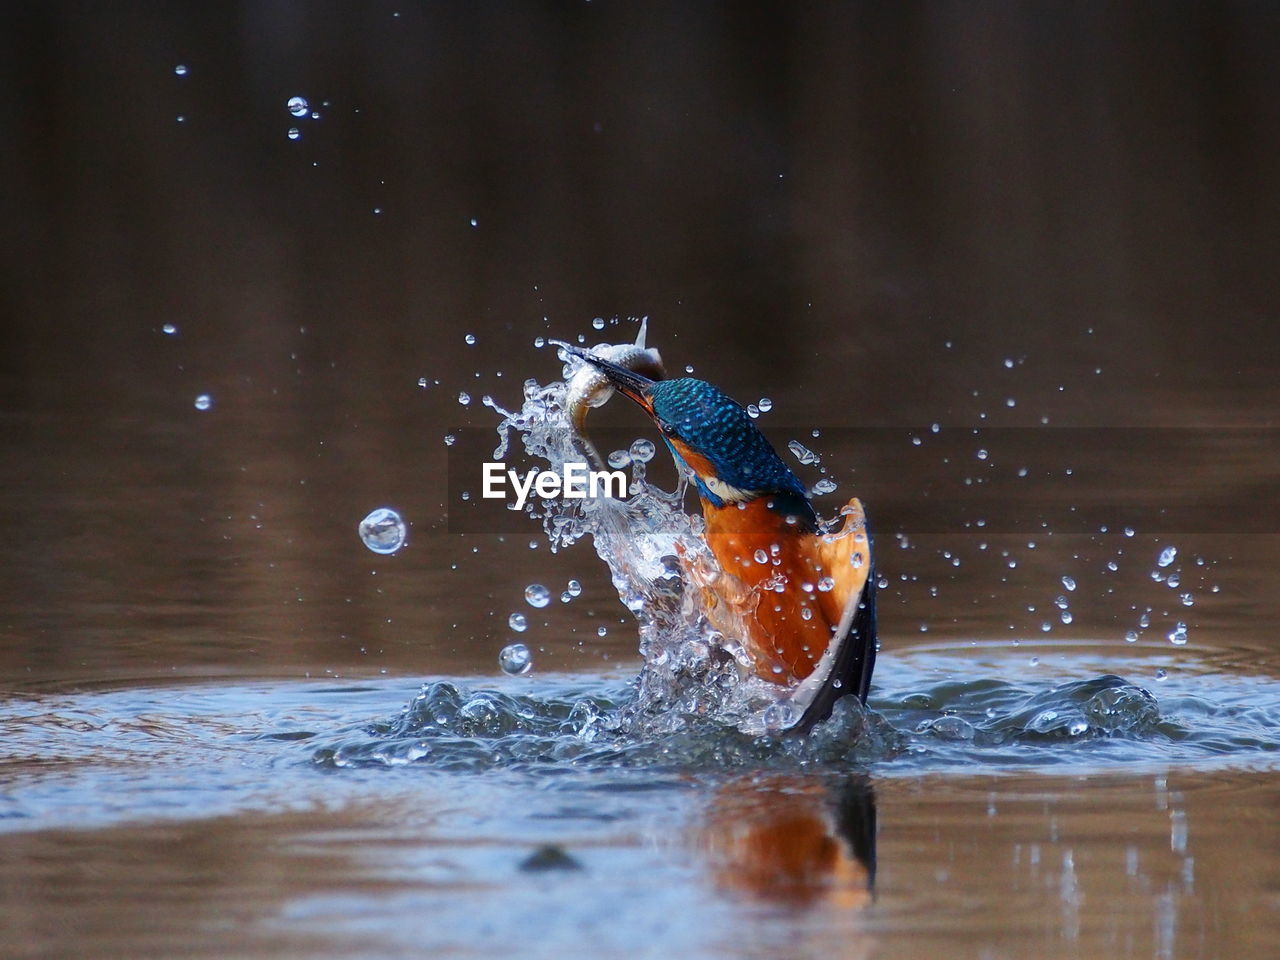 Kingfisher splashing water